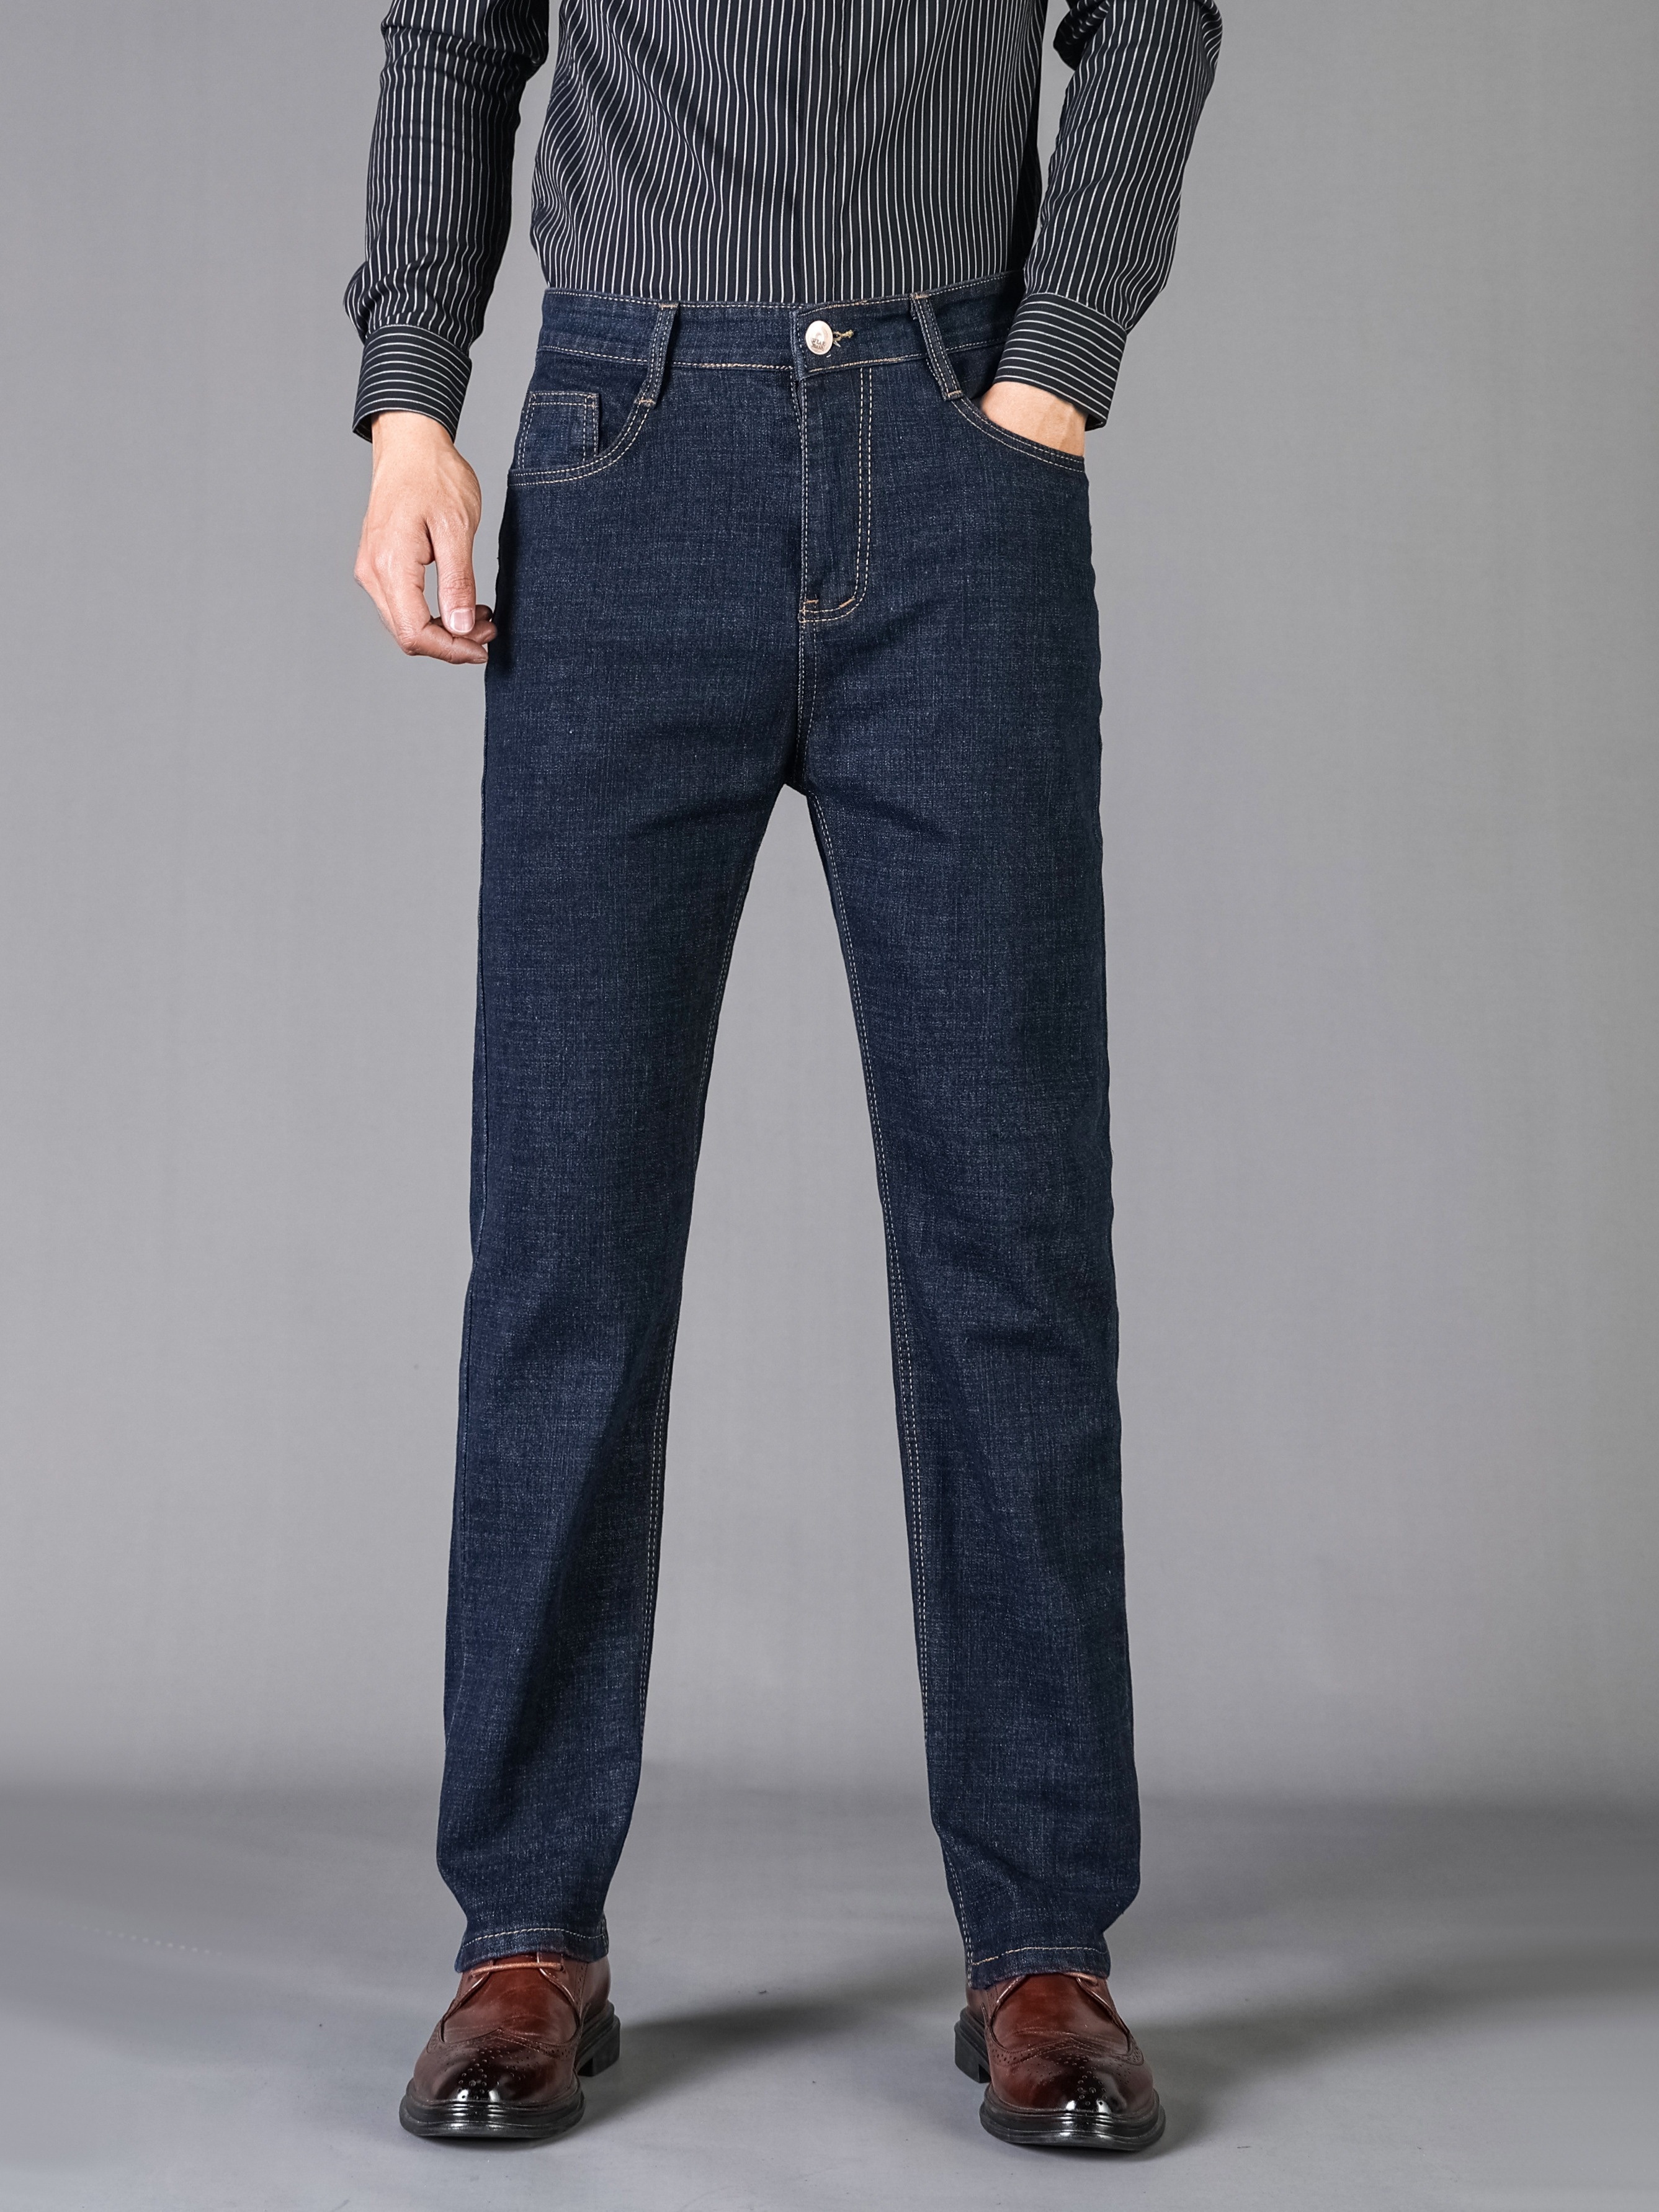 Classic Design Semi formal Jeans Men's Casual Stretch Denim - Temu